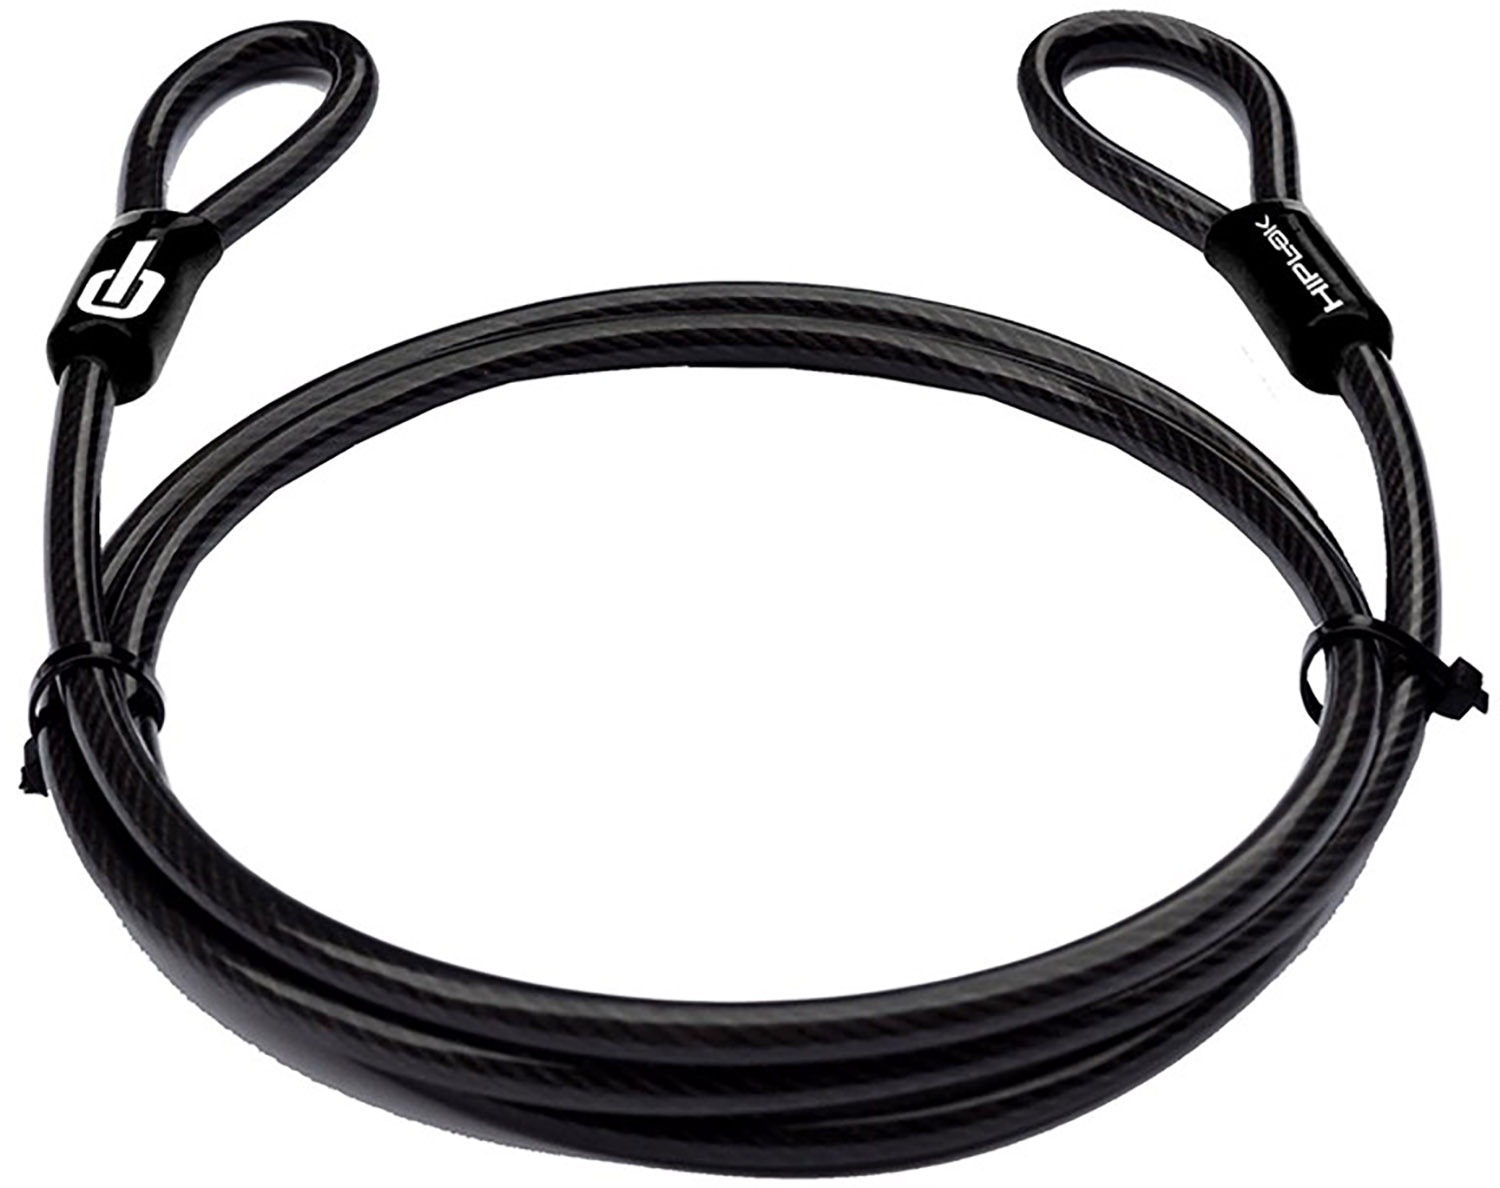 HIPLOK 2 meter låse kabel - double loop